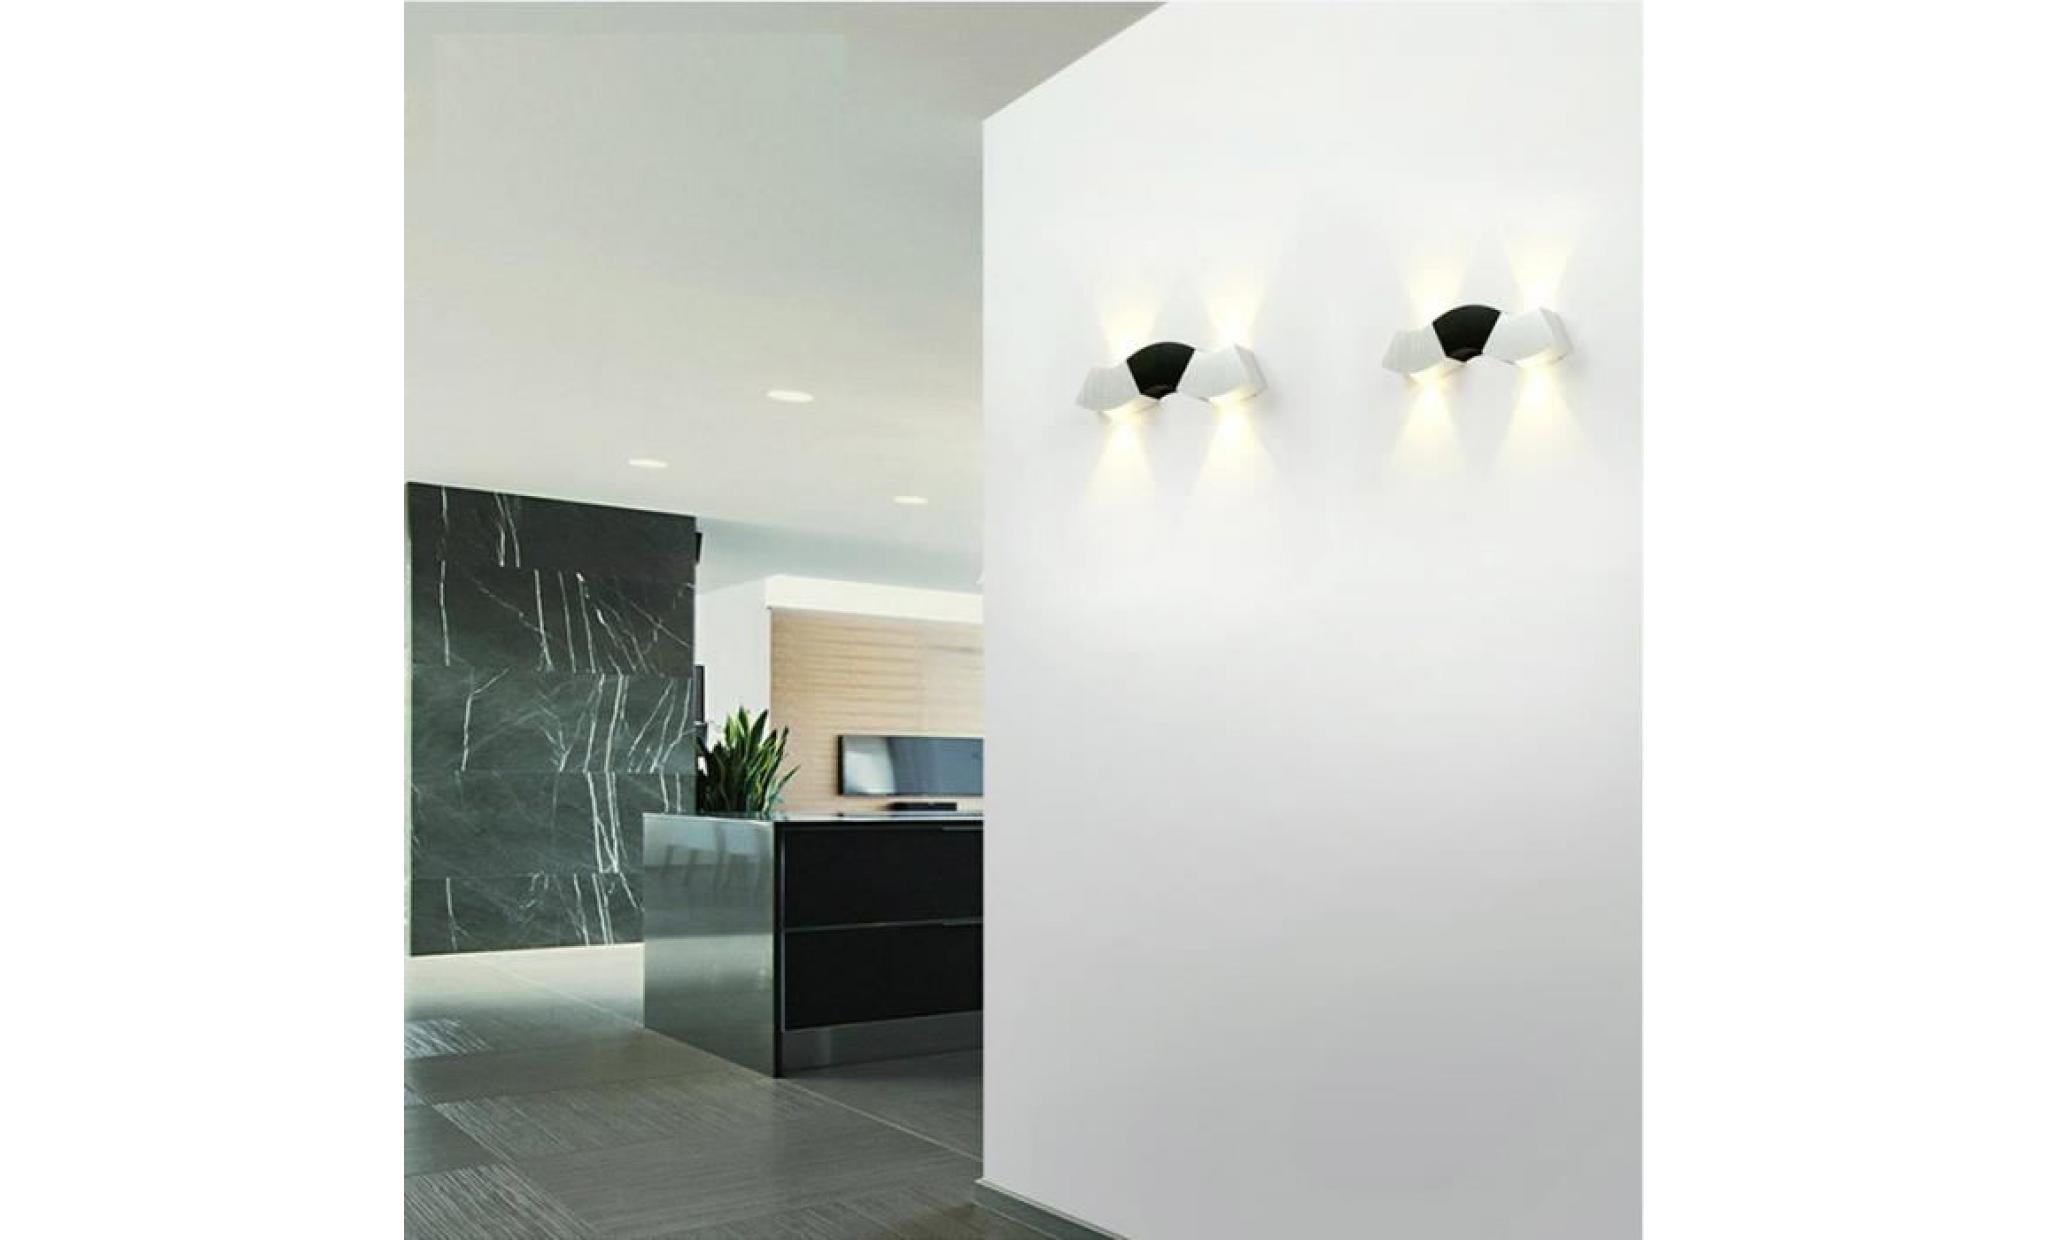 4w leds lampe up and down design  en aluminium pour chambre maison couloir salon( blanc chaud) pas cher